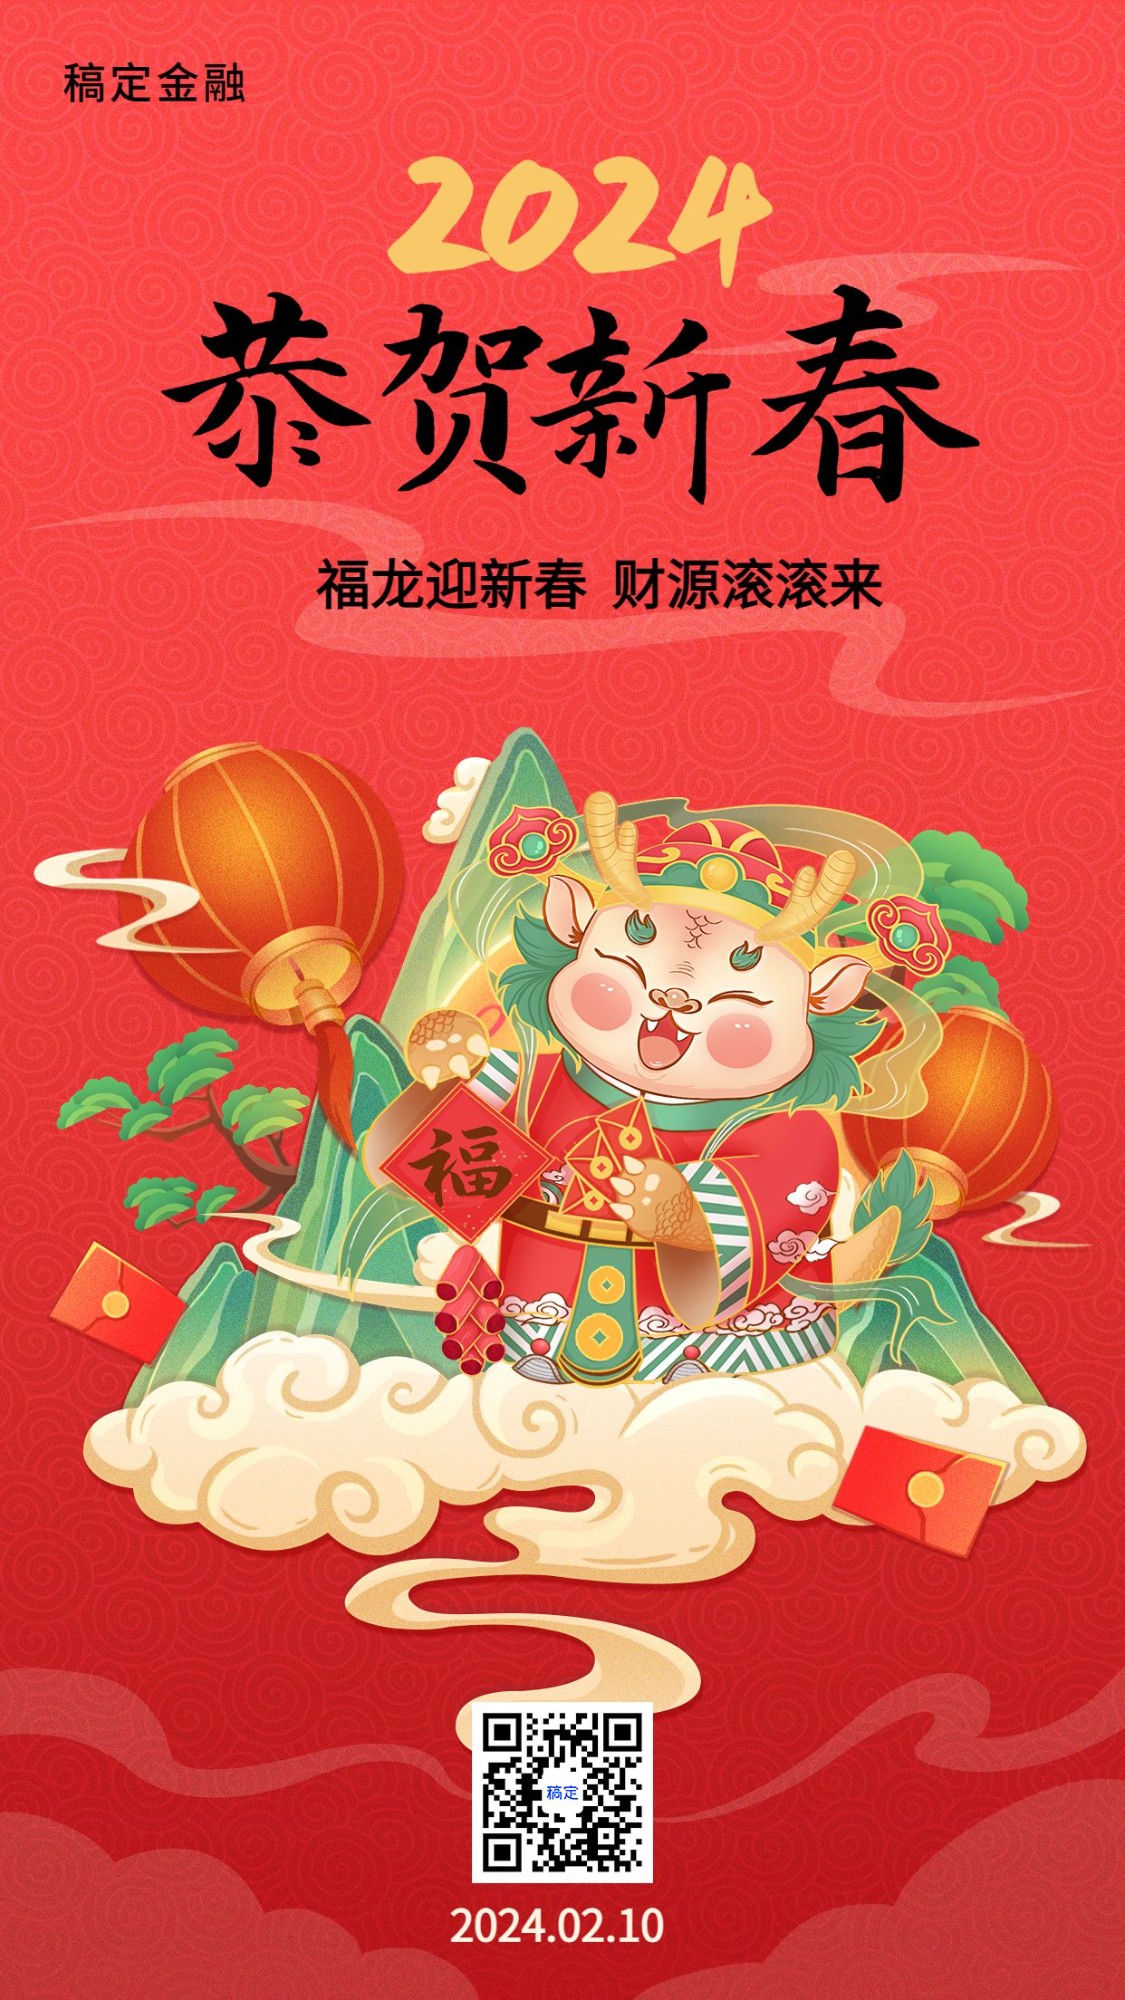 春节金融保险龙年节日祝福喜庆插画手机海报